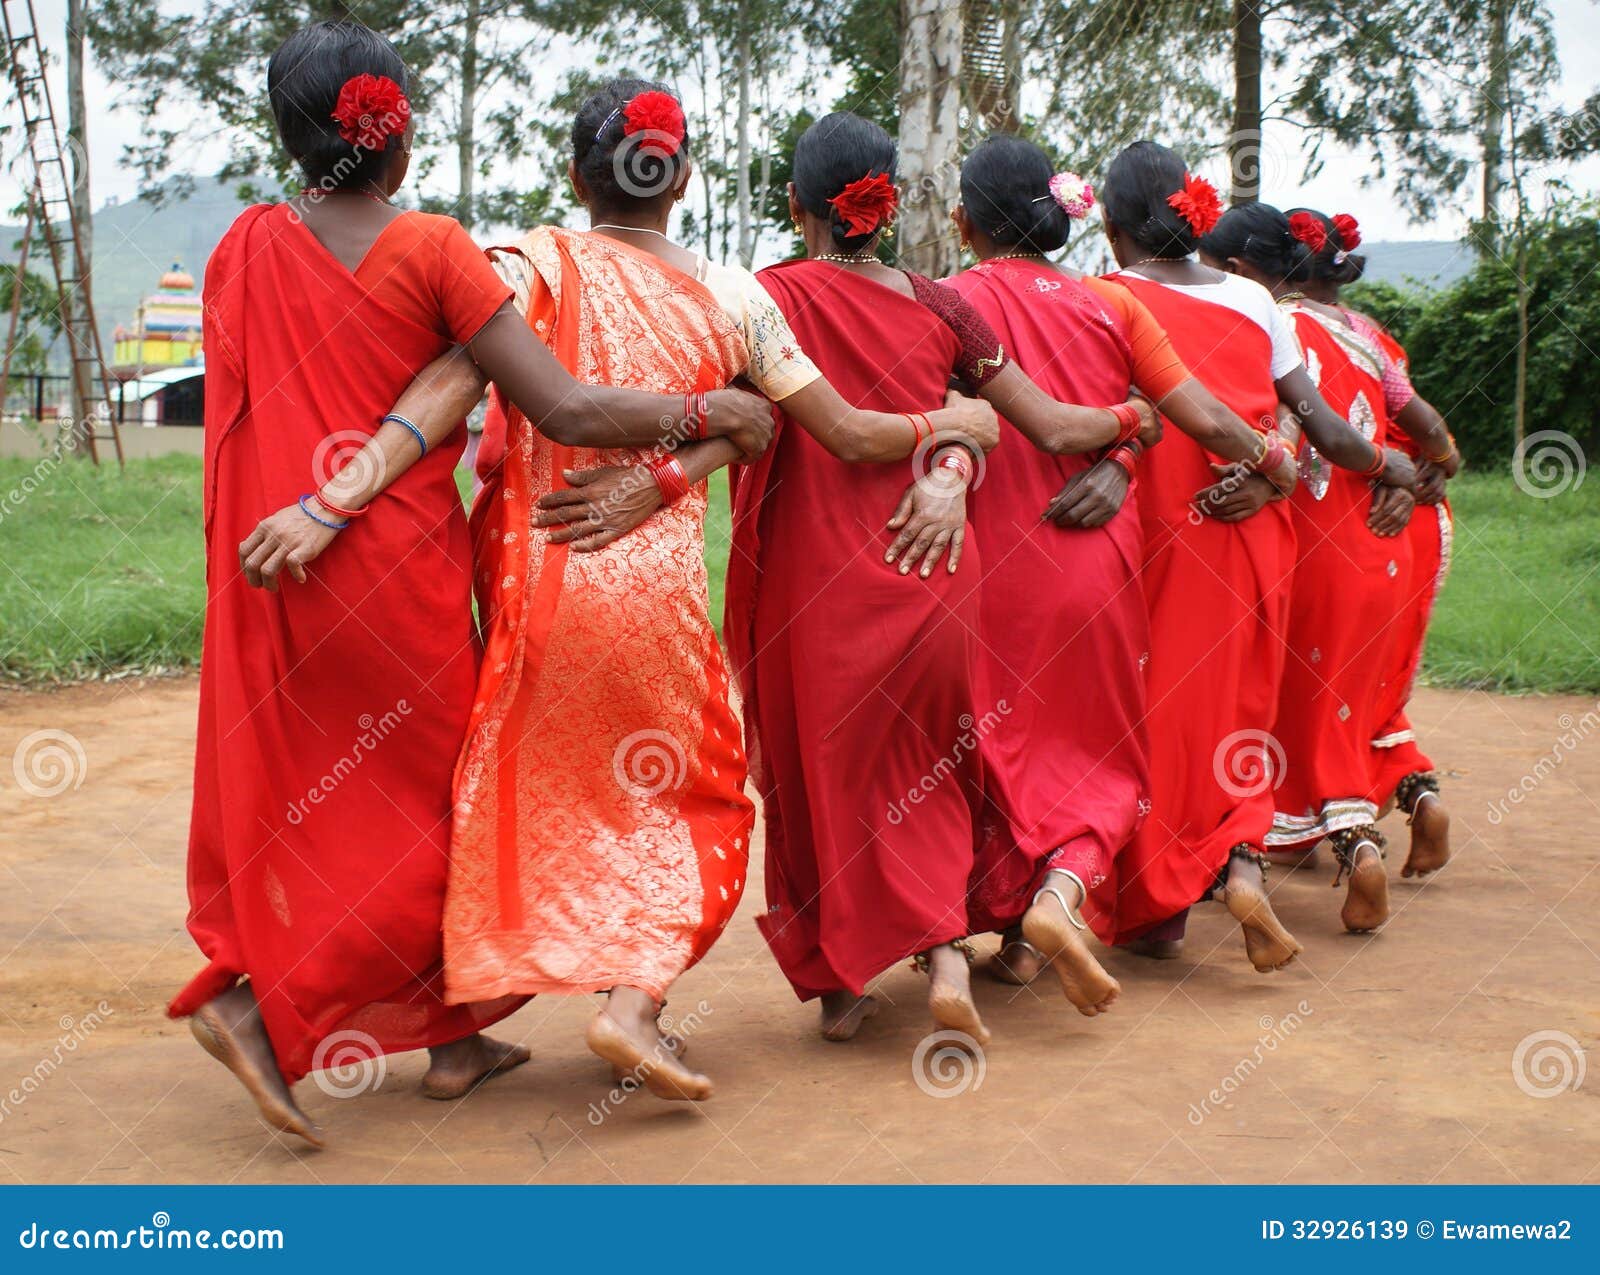 Tribal Dances of India-Adivasi Dances